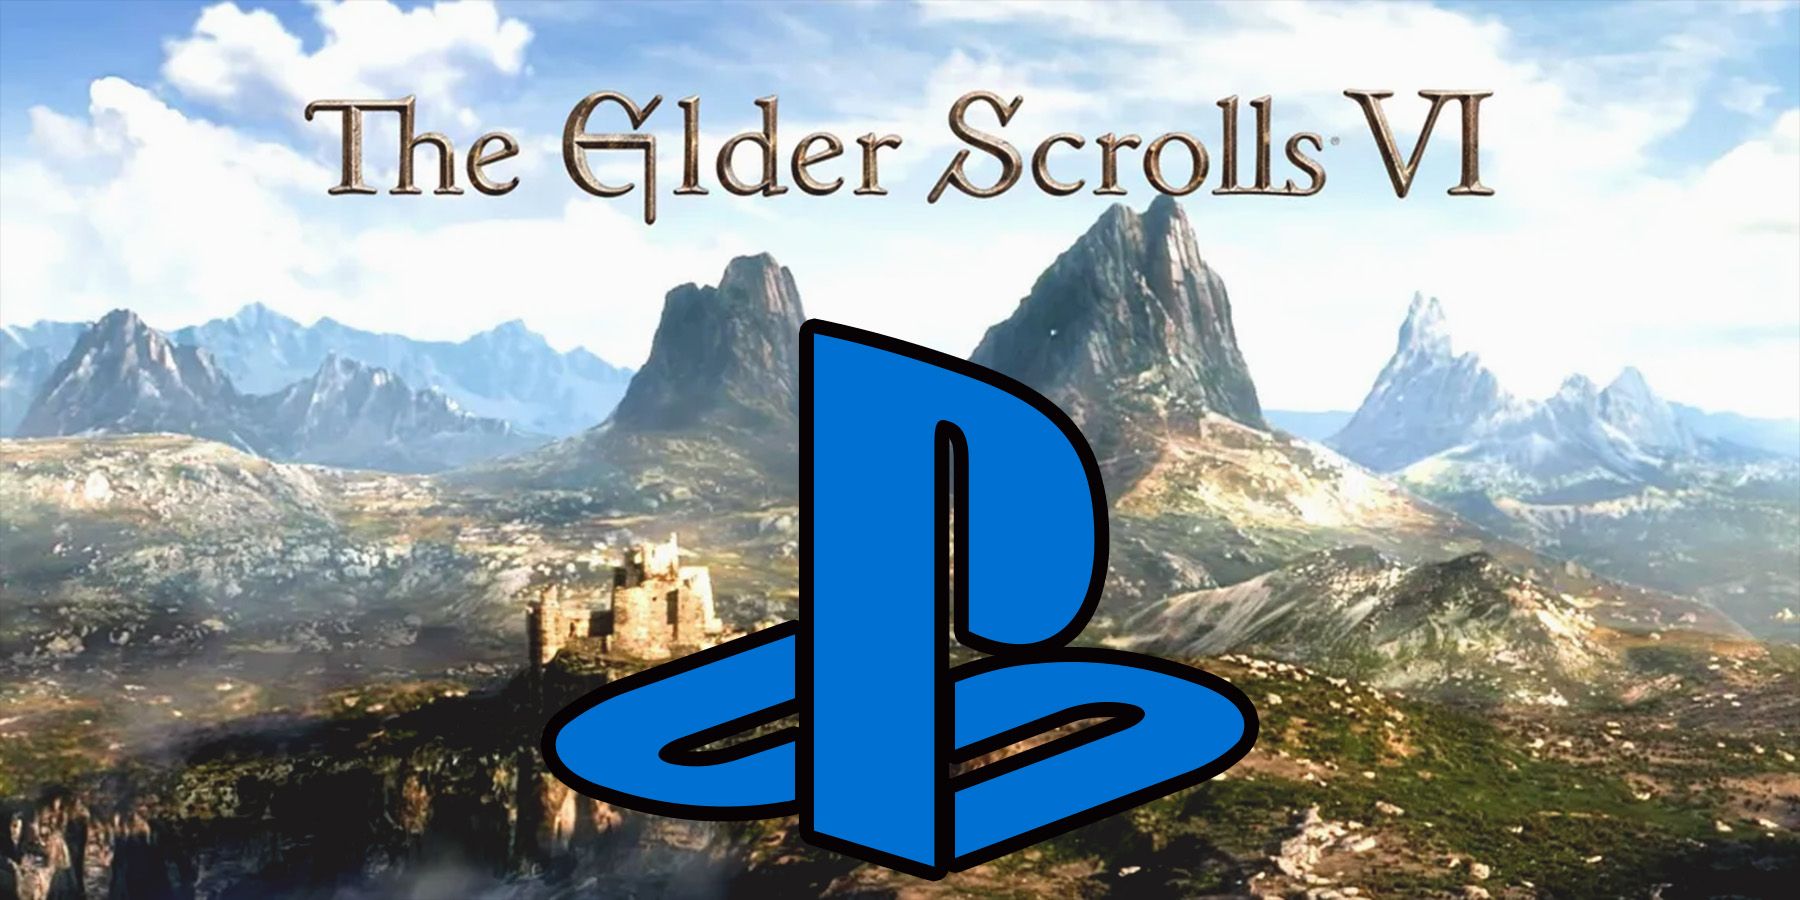 The Elder Scrolls 6 trailer landscape with PlayStation logo